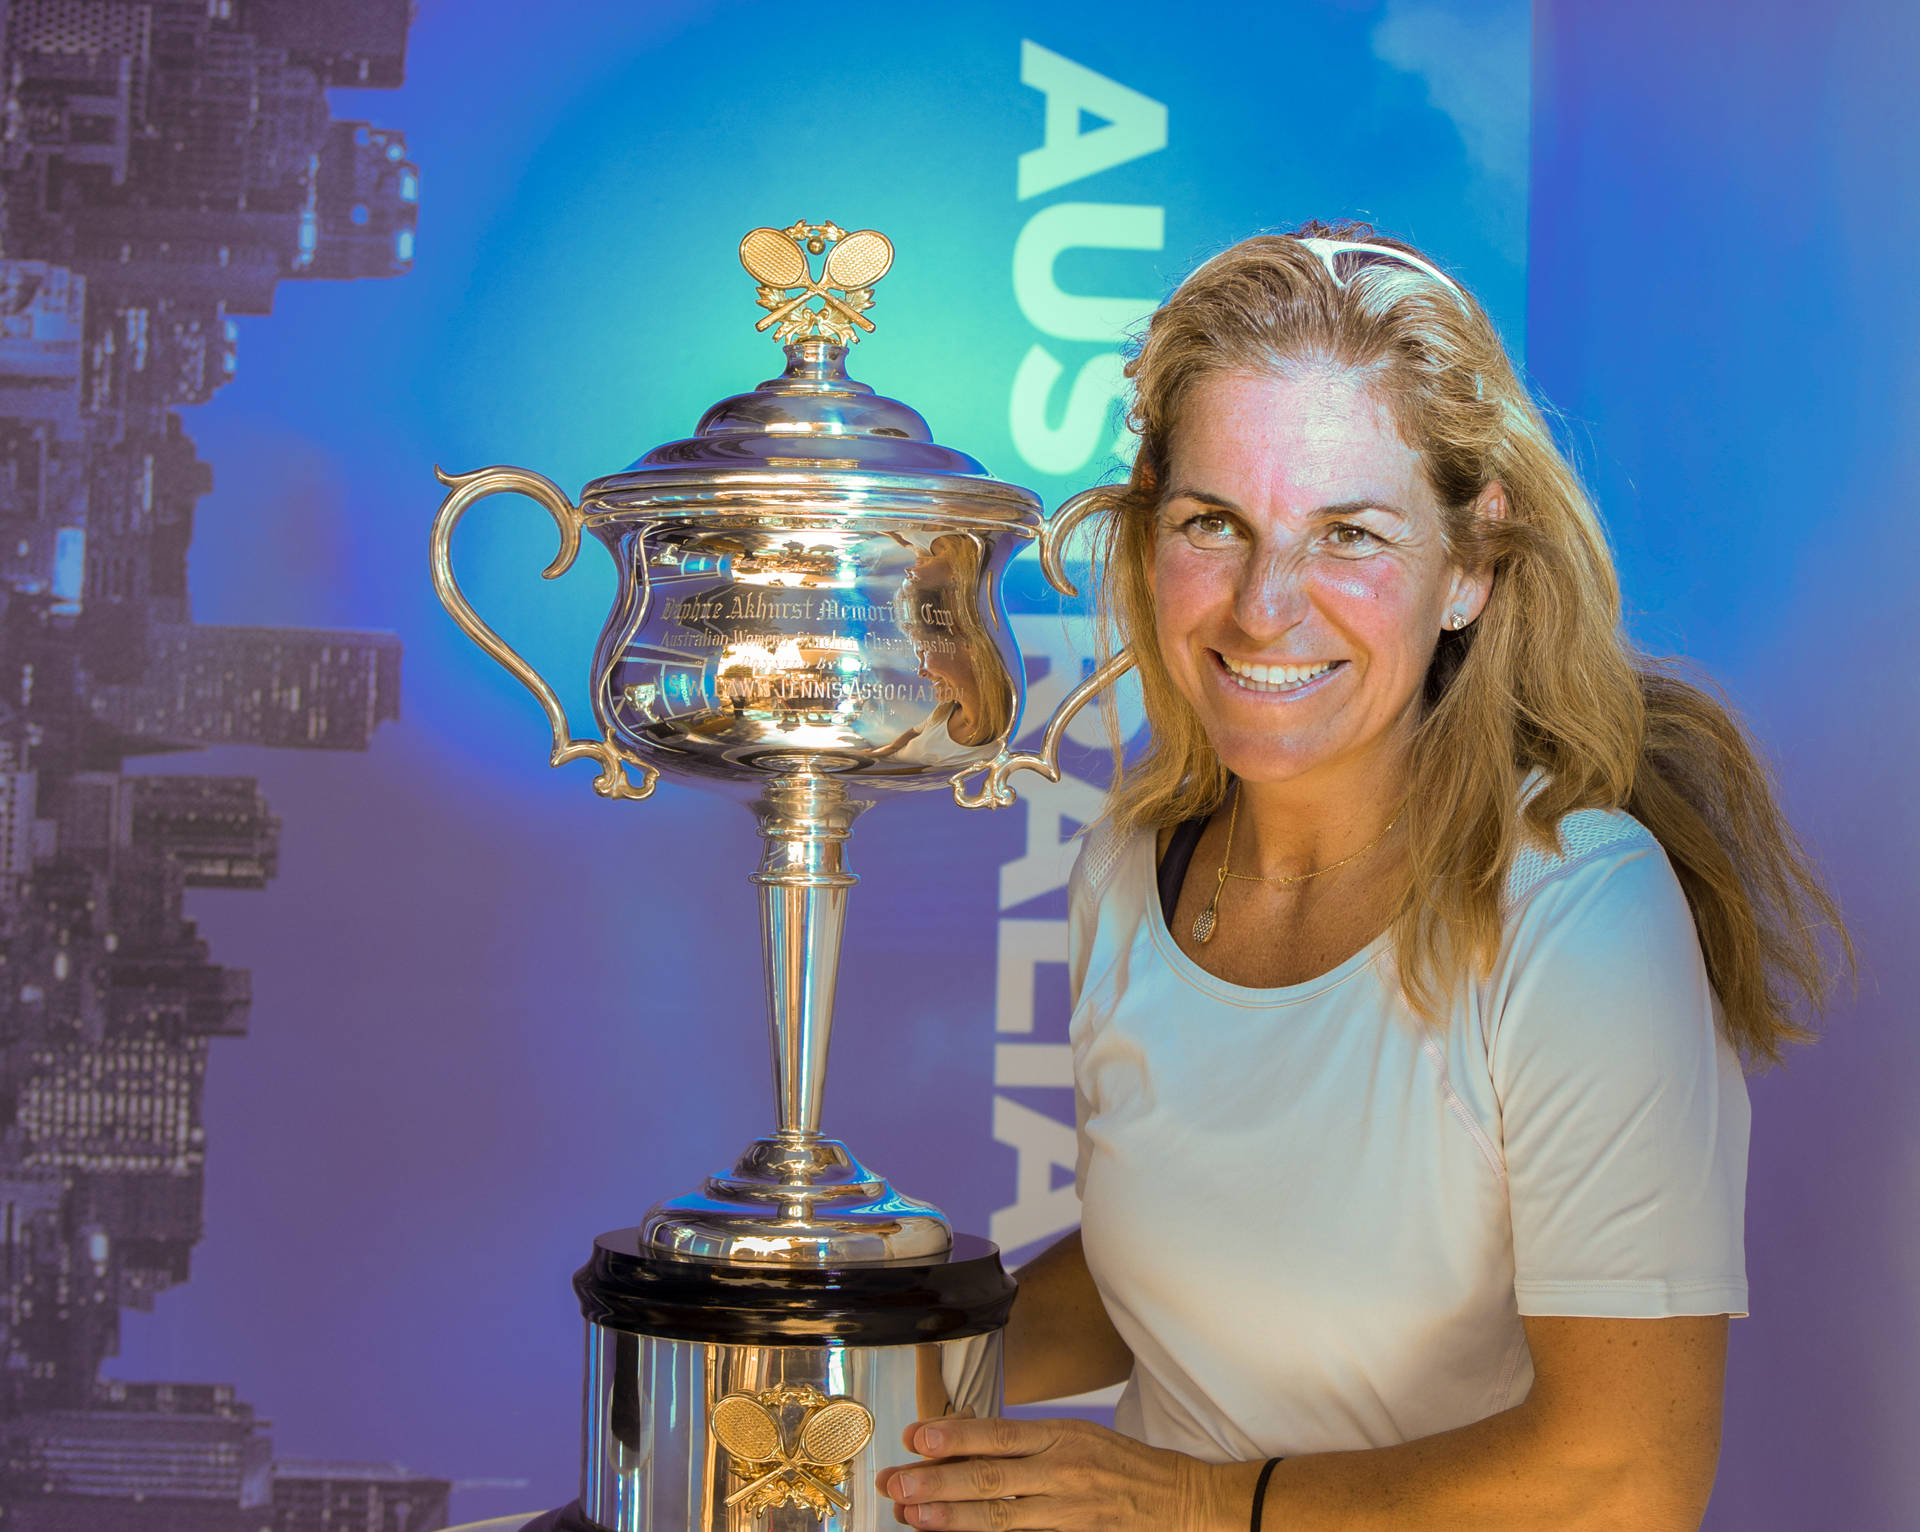 Arantxasánchez Vicario-trofén 2016 Australian Open. Wallpaper